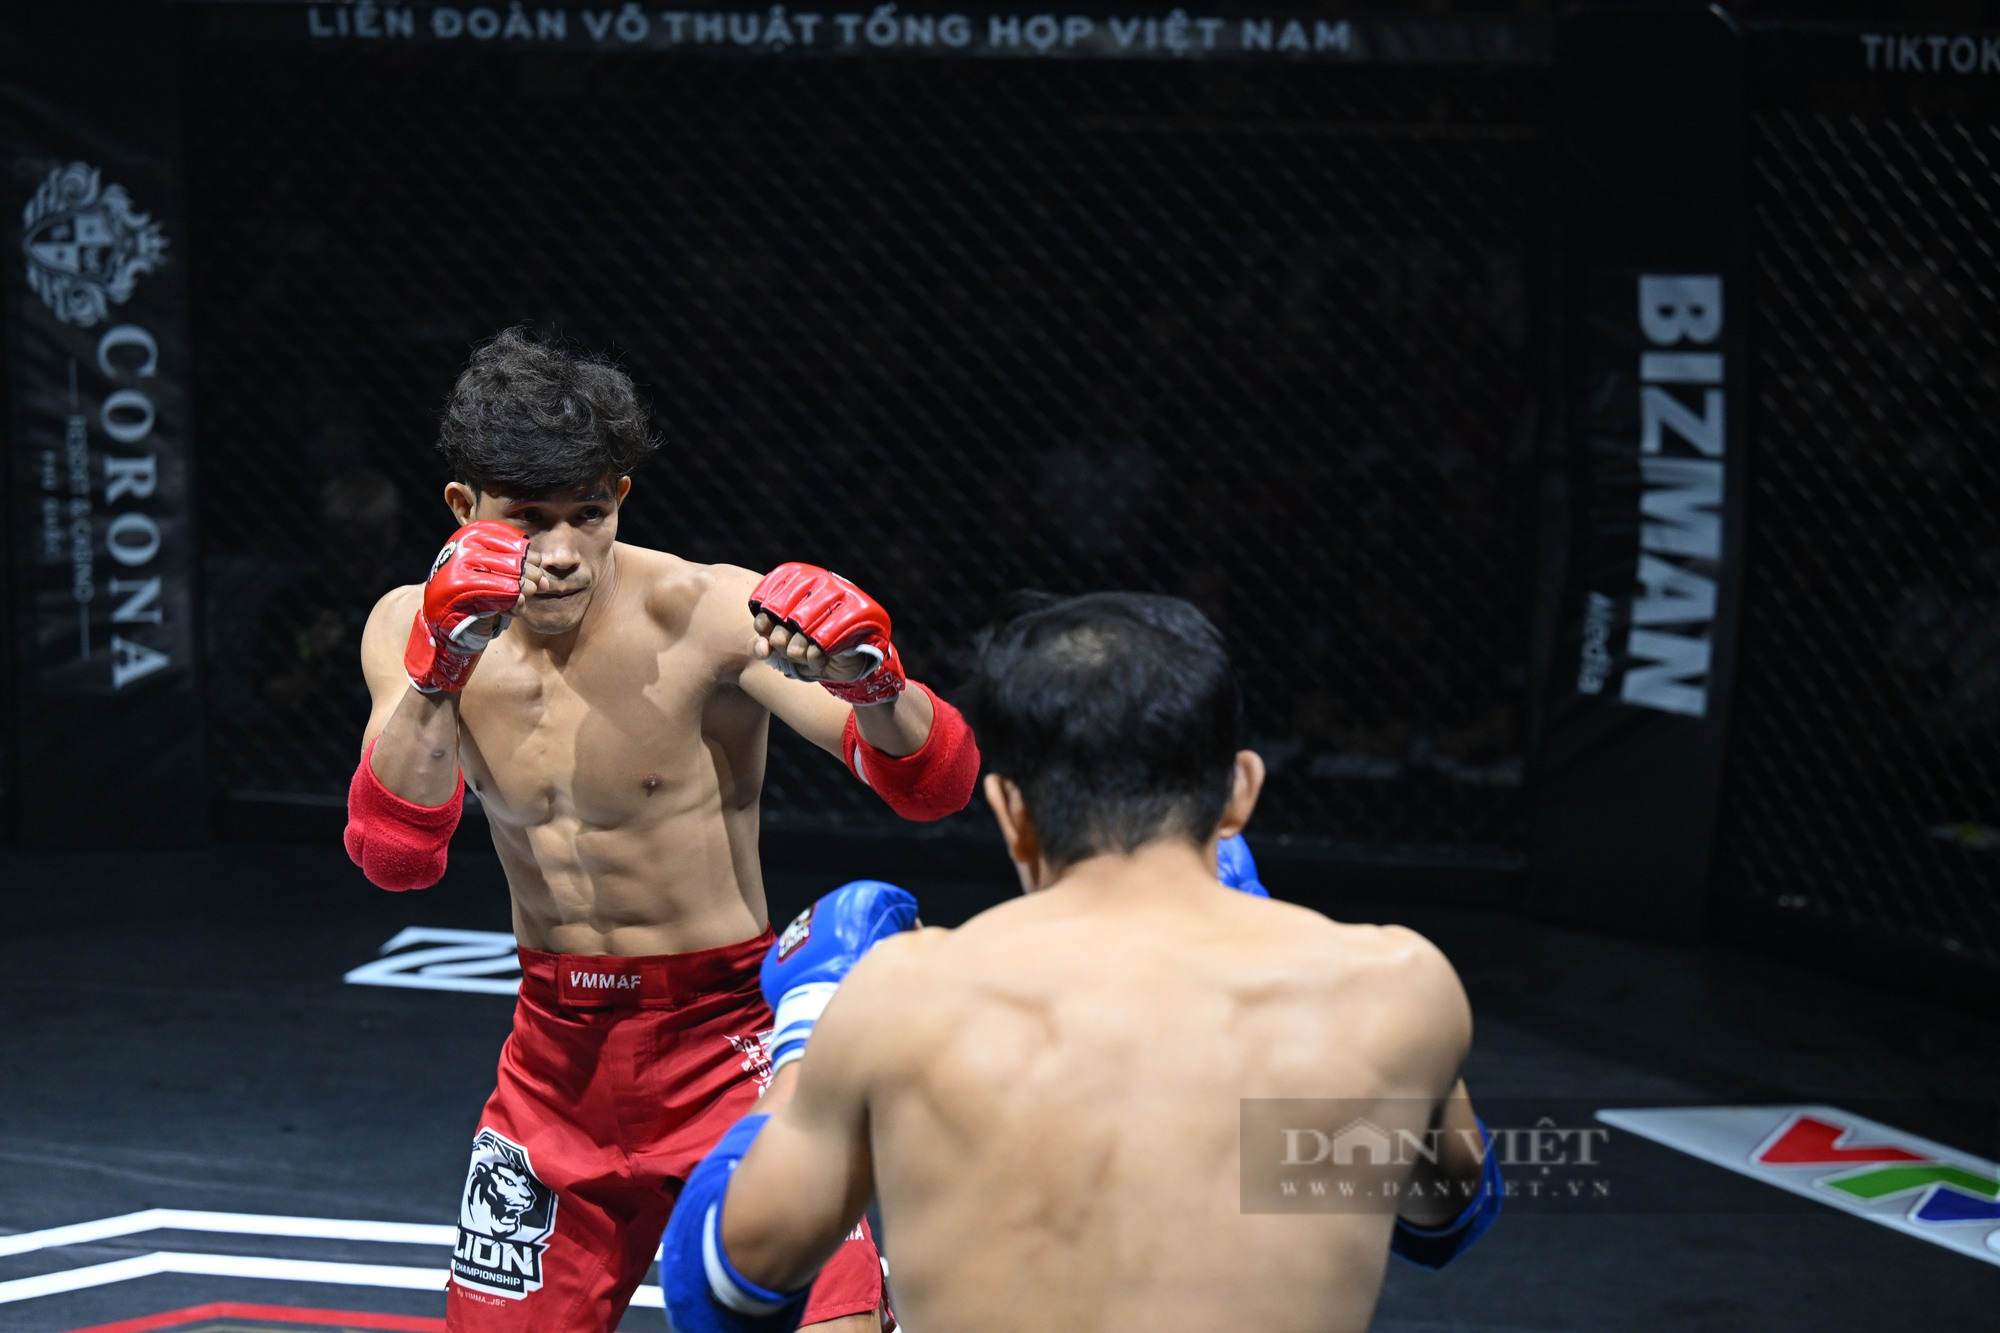 Nguyễn Trần Duy Nhất hạ knock-out đối thủ tại trận bán kết MMA Việt Nam - Ảnh 1.